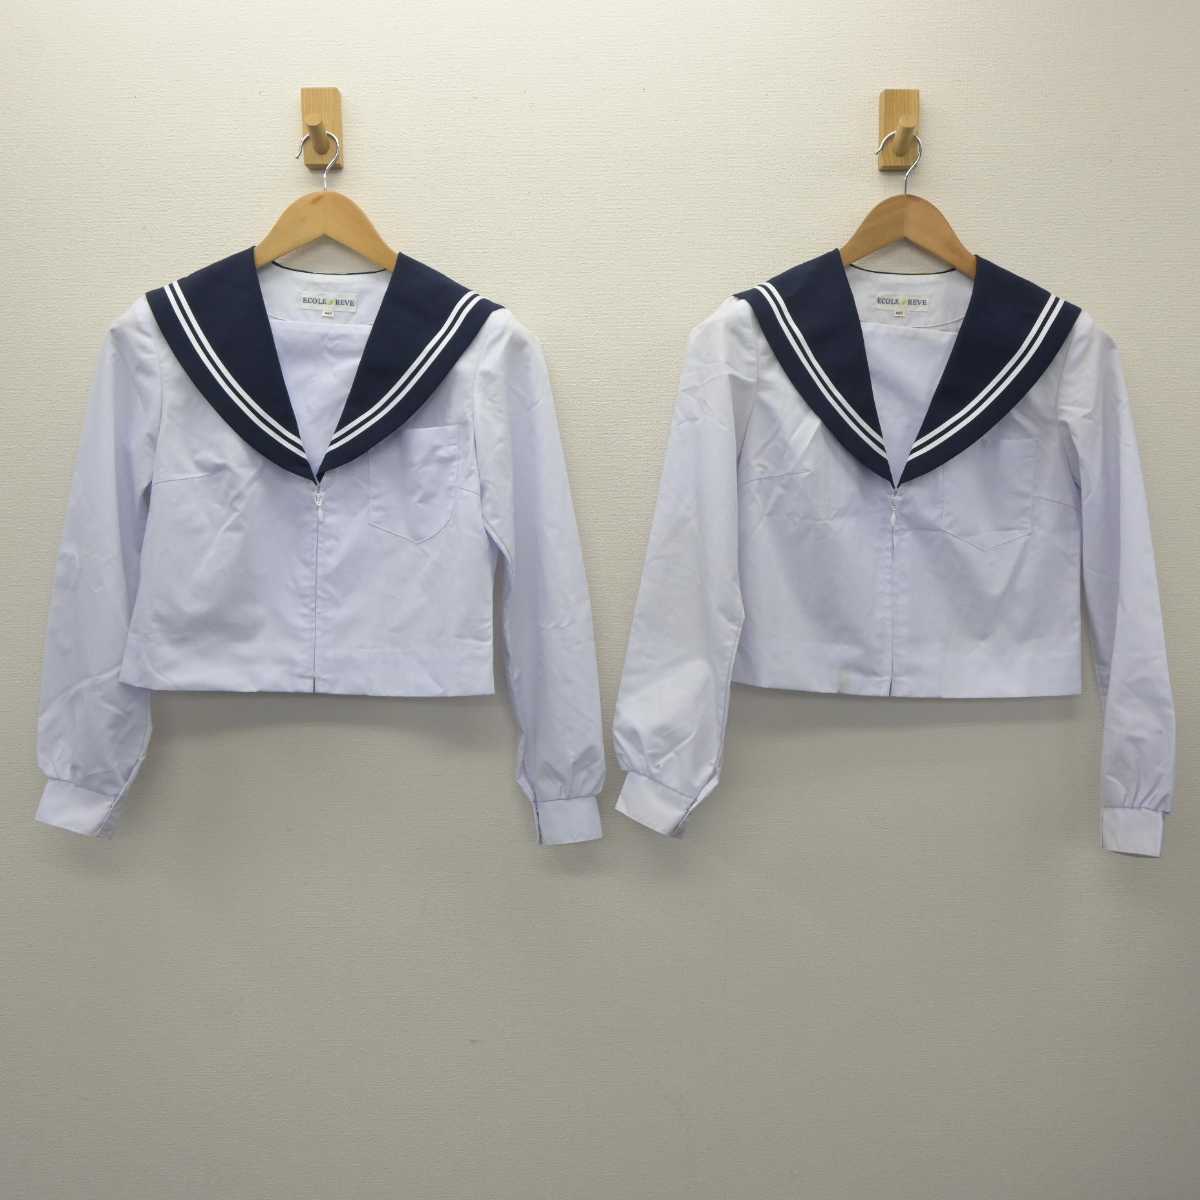 【中古】愛知県 東海市立上野中学校 女子制服 3点 (セーラー服・スカート) sf062993